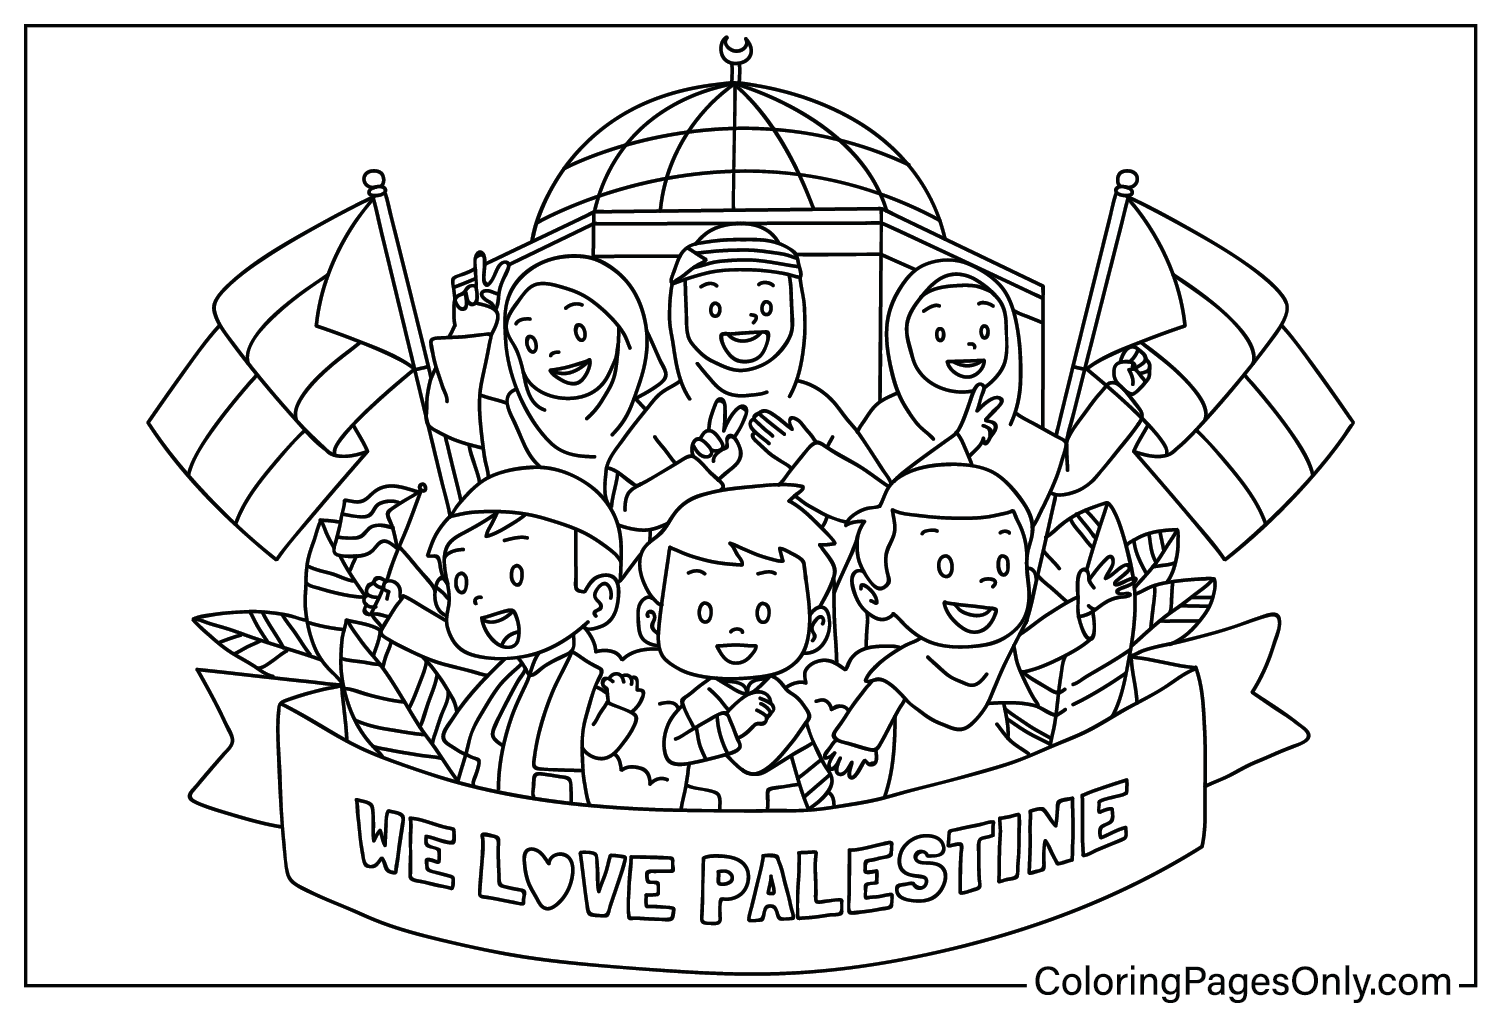 Coloriage gratuit Palestine de Palestine